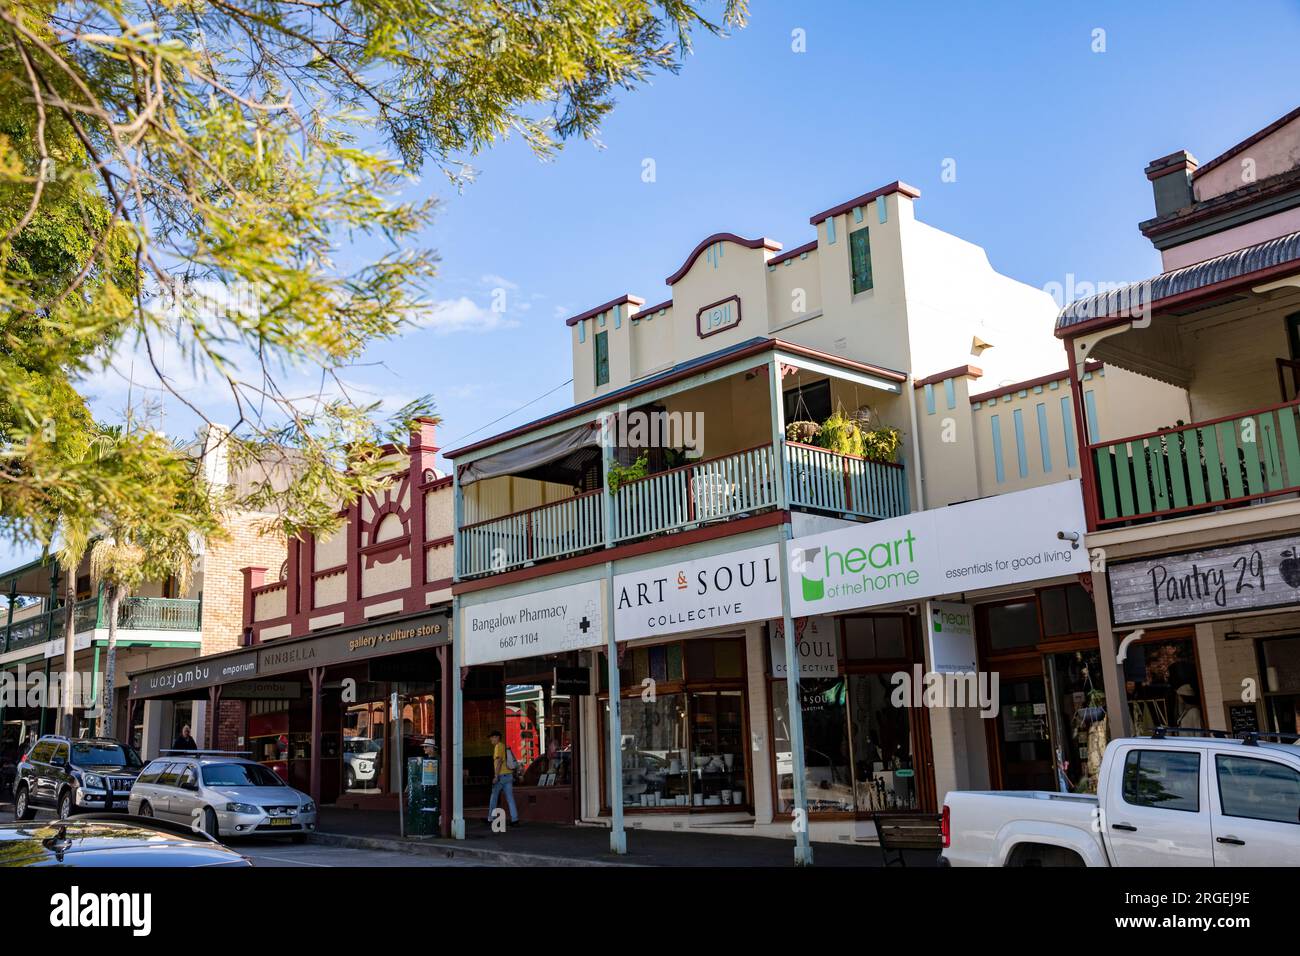 Bungalow Australien, regionale australische Stadt in der Region Northern Rivers von New South Wales, Australien Stockfoto